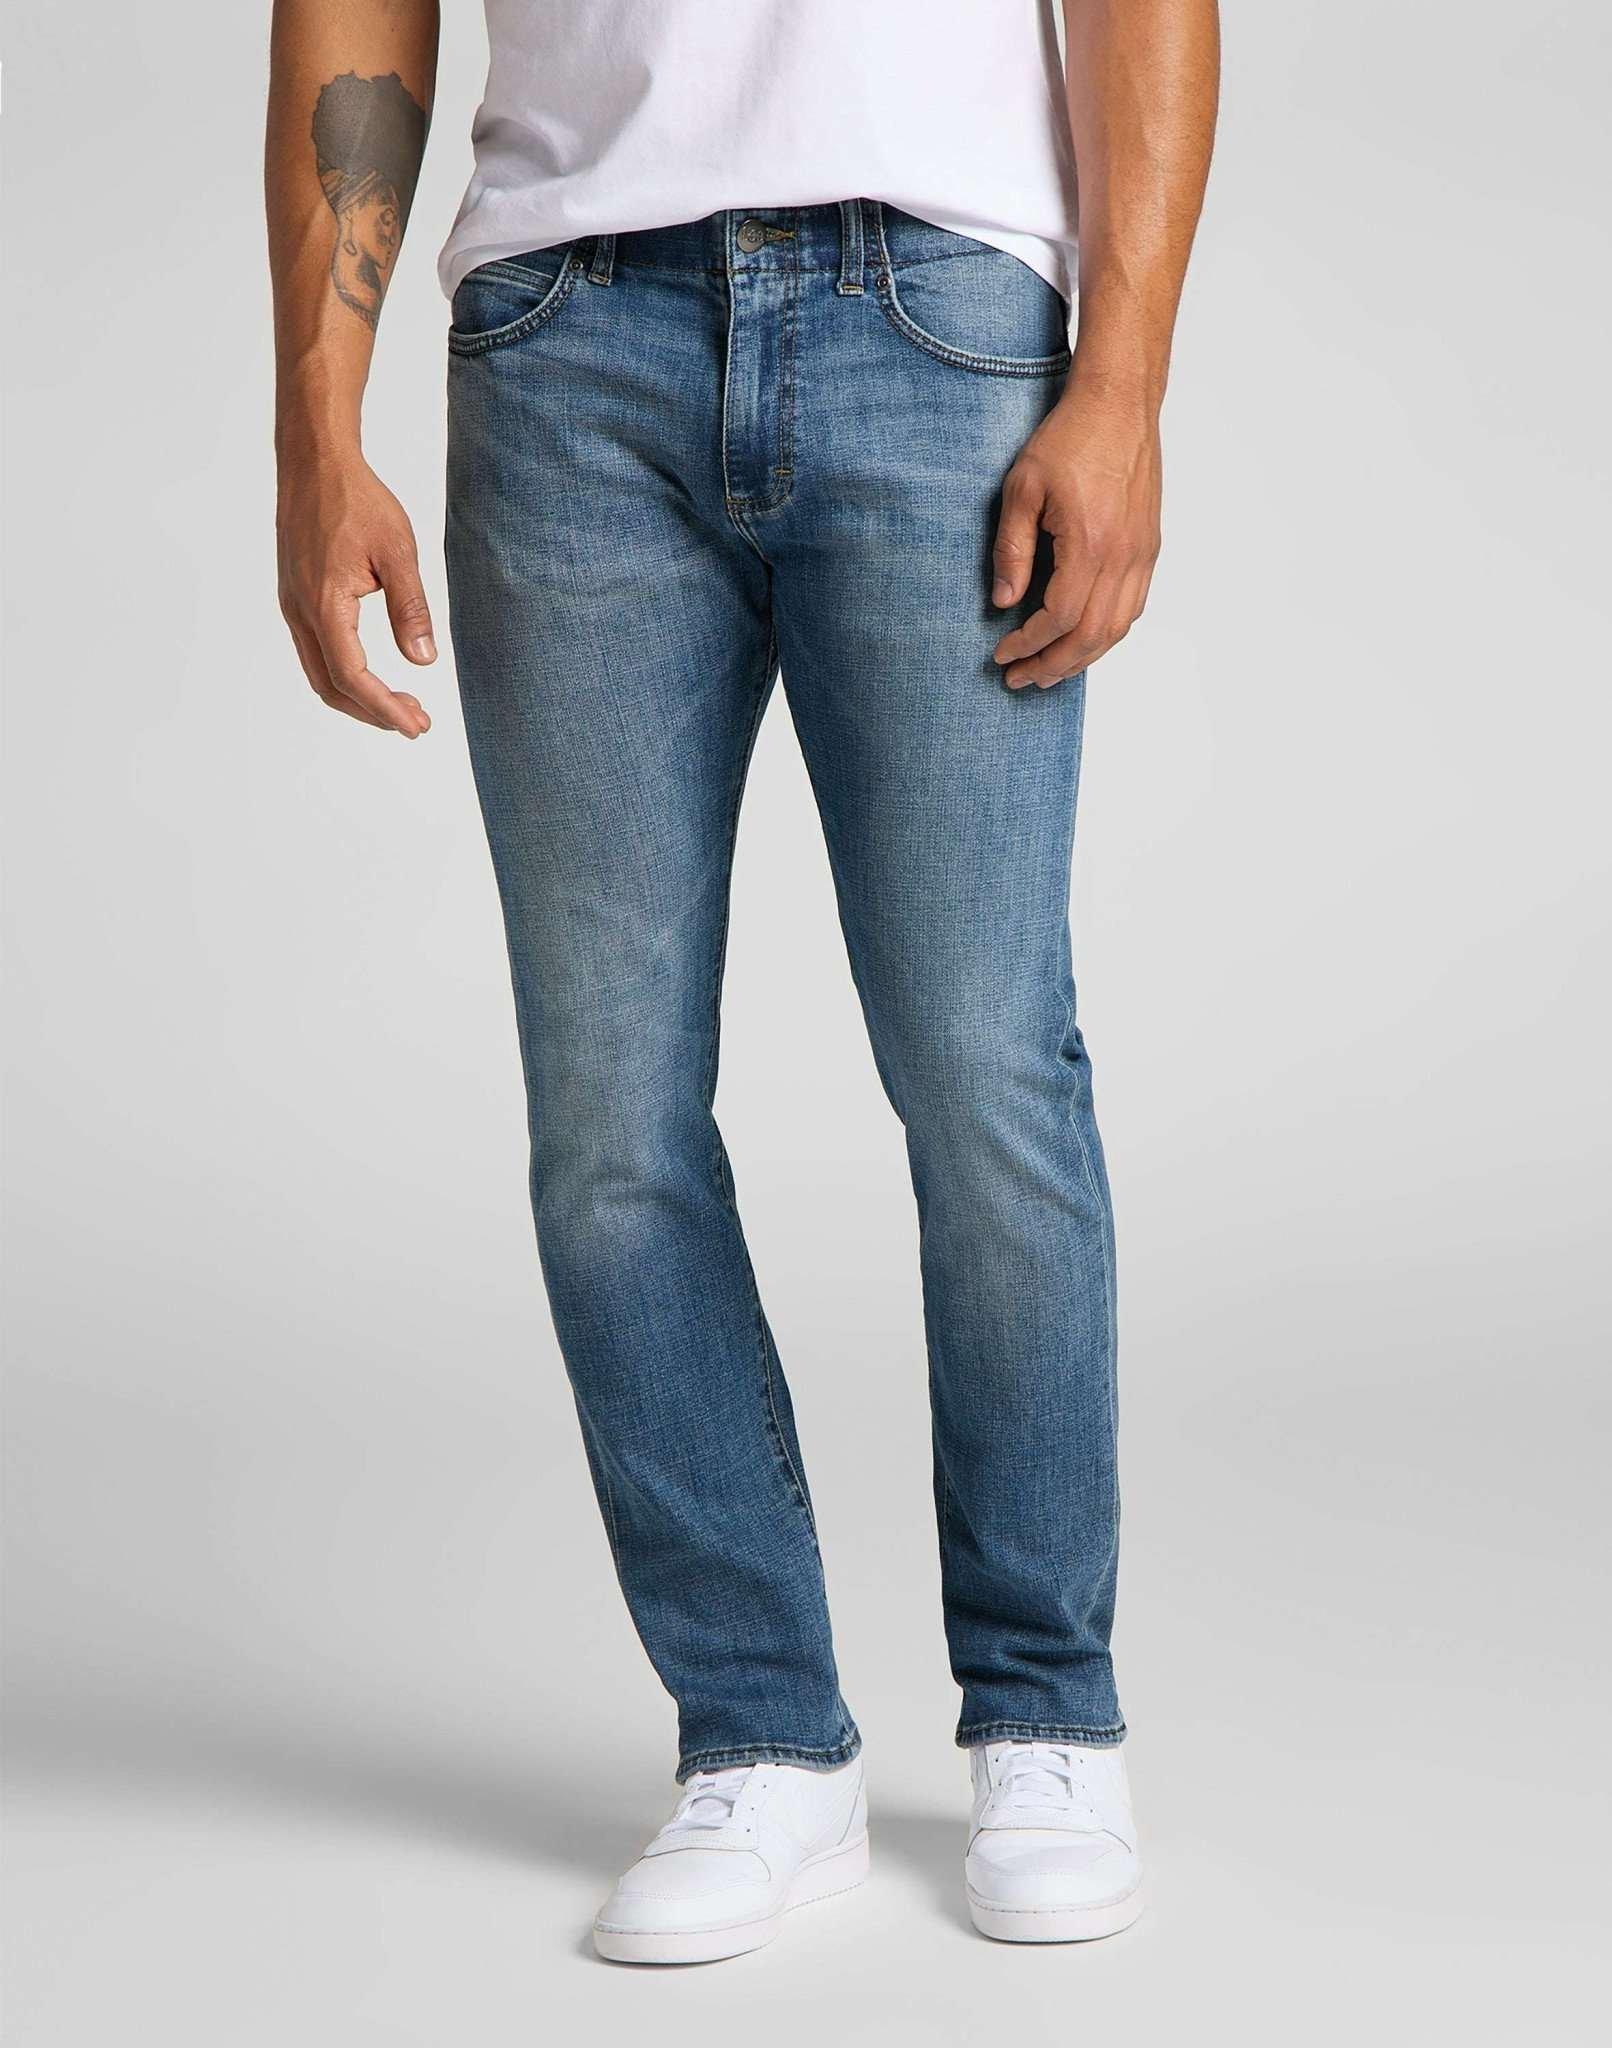 Jeans Slim Fit Mvp Herren Blau Denim L30/W30 von Lee